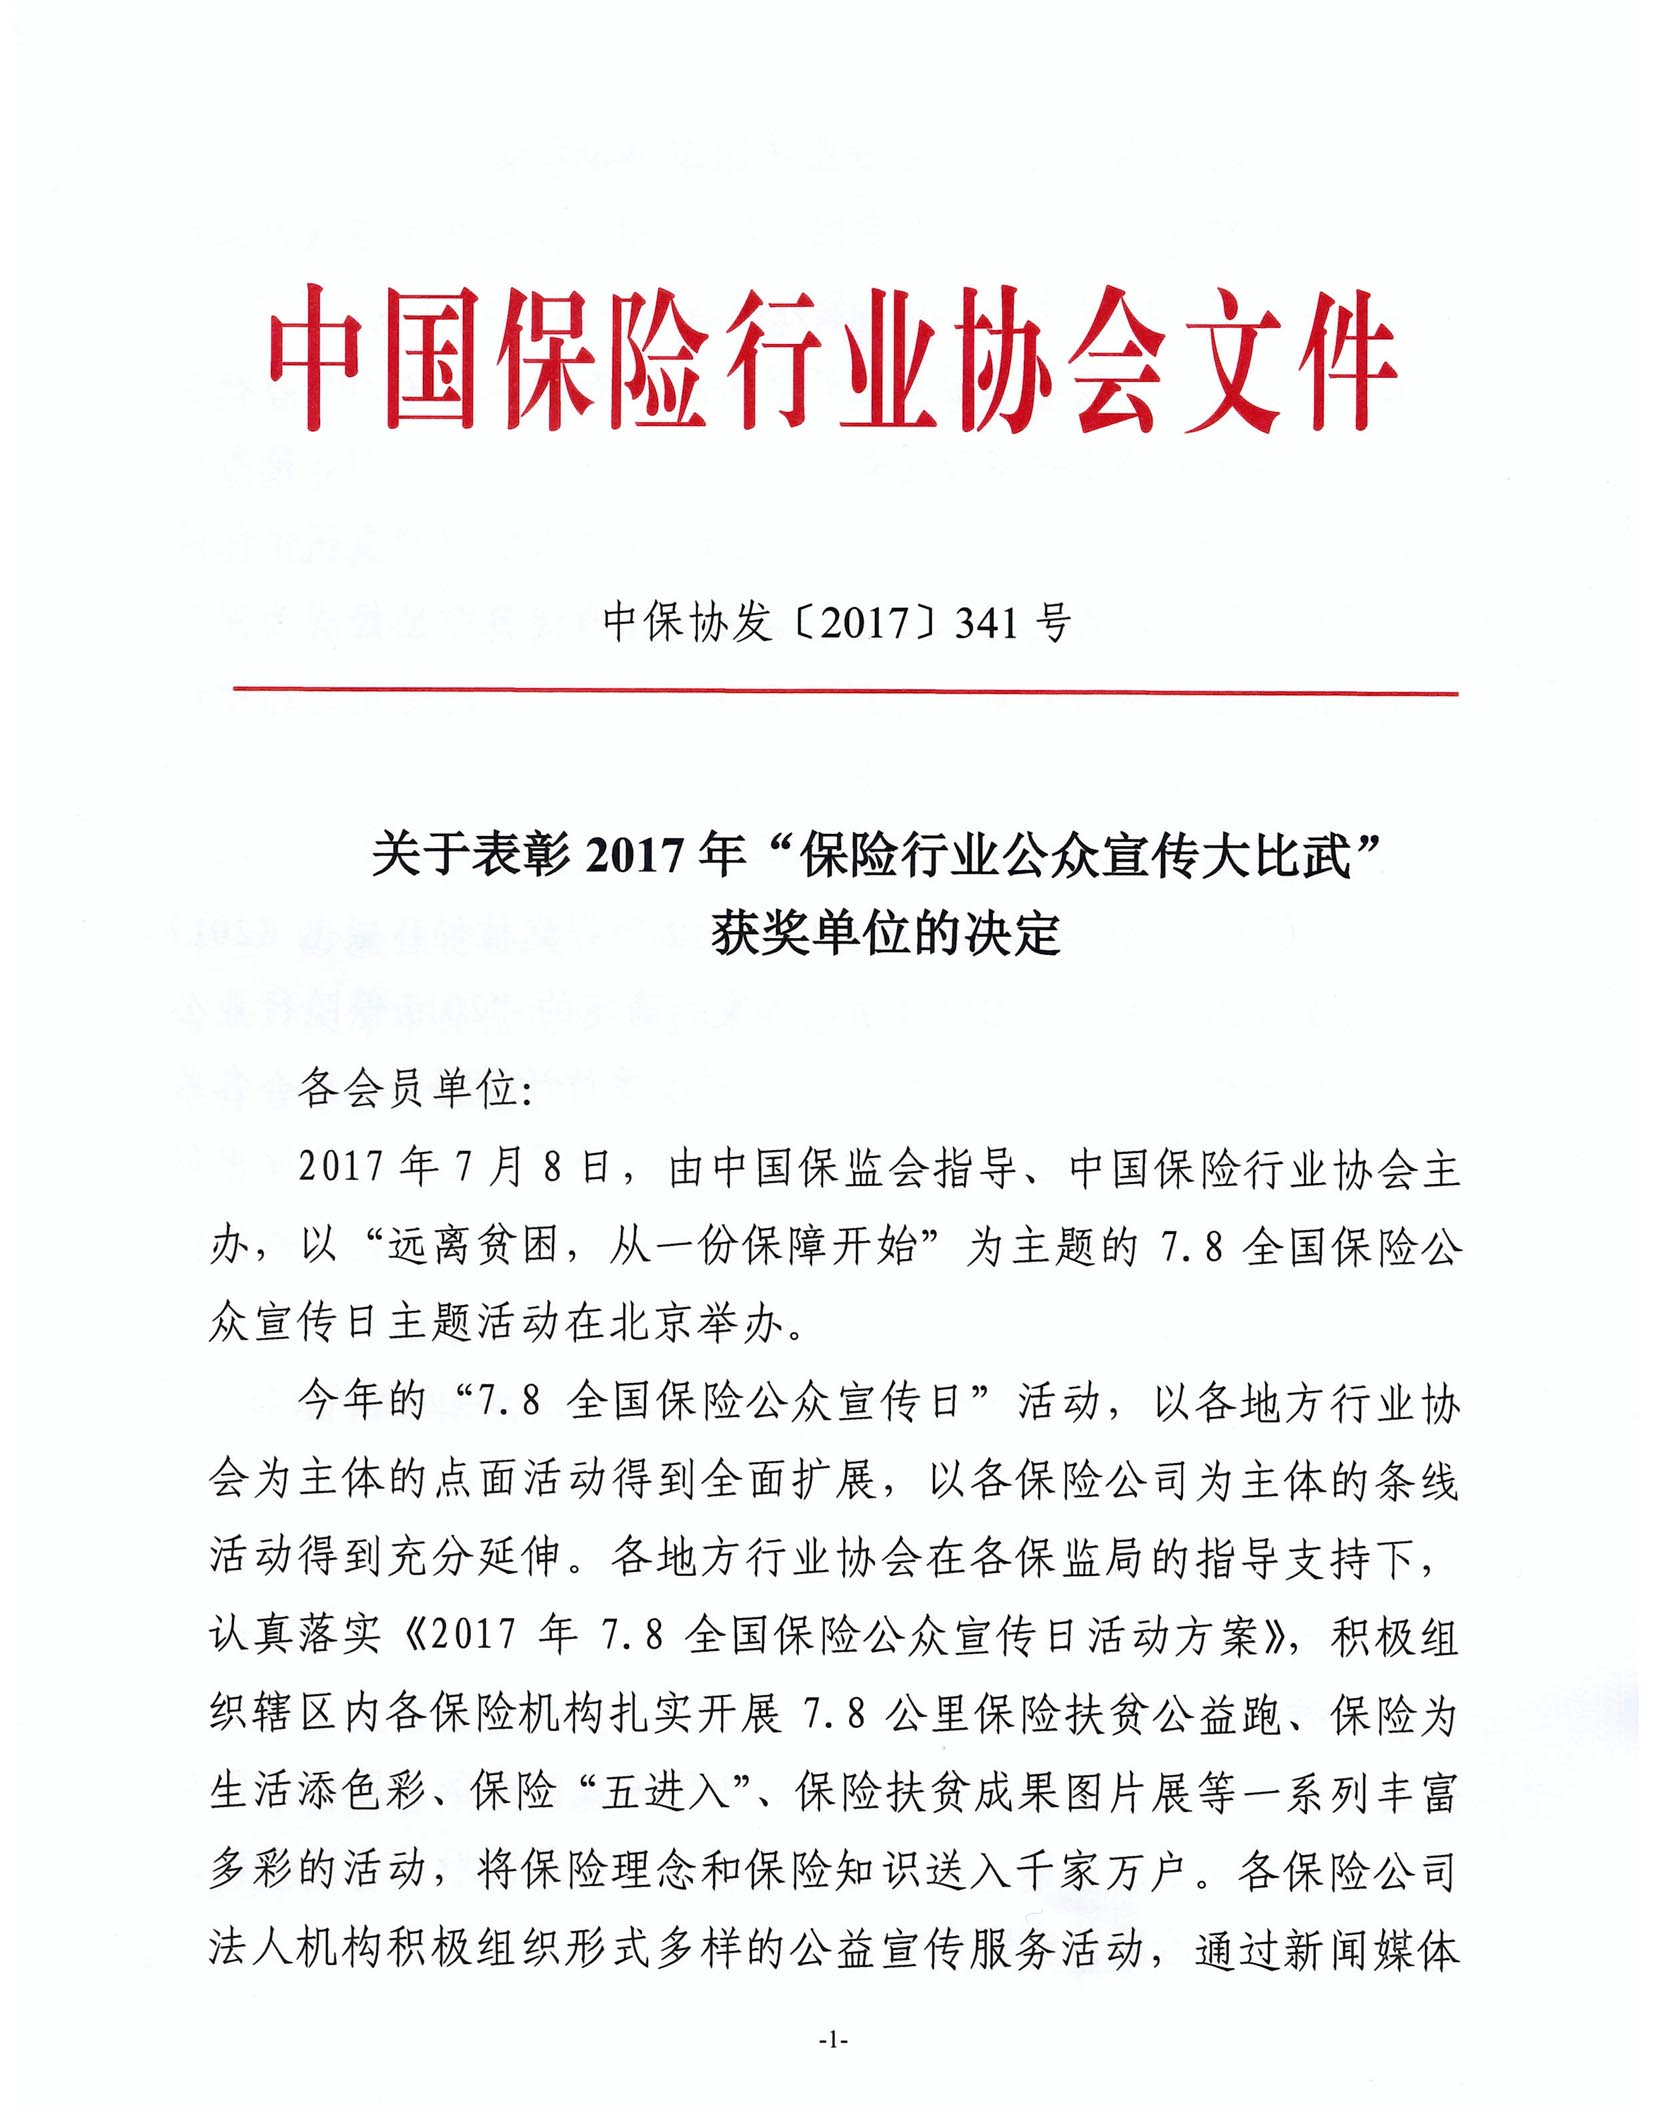 中意人寿荣获2017年中国保险业公众宣传大比